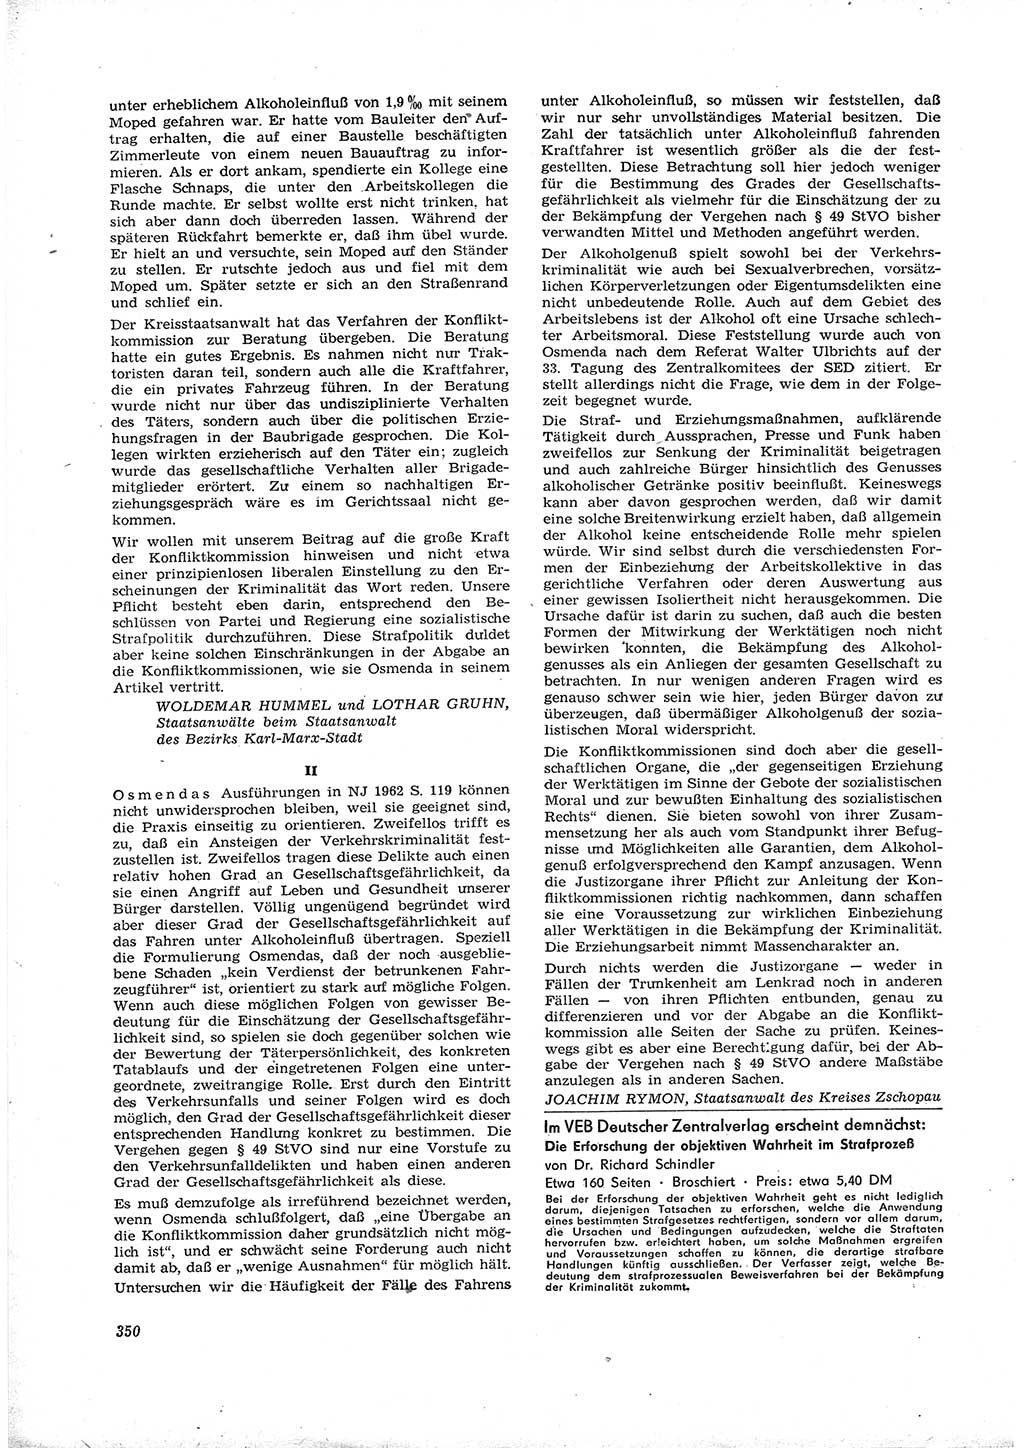 Neue Justiz (NJ), Zeitschrift für Recht und Rechtswissenschaft [Deutsche Demokratische Republik (DDR)], 16. Jahrgang 1962, Seite 350 (NJ DDR 1962, S. 350)